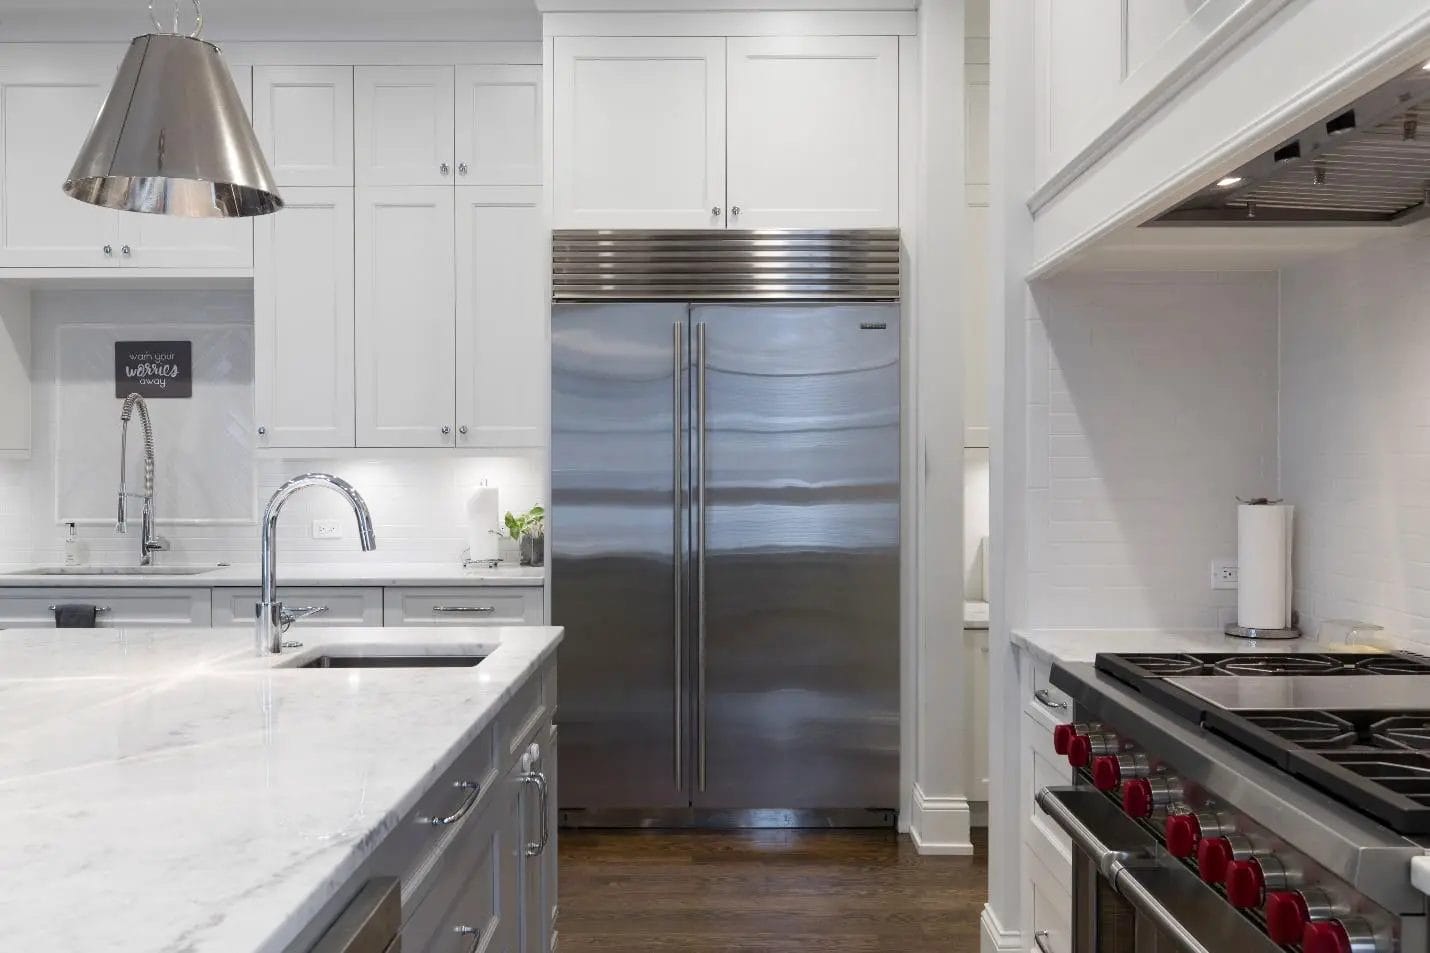 Double door refrigerator more energy efficient